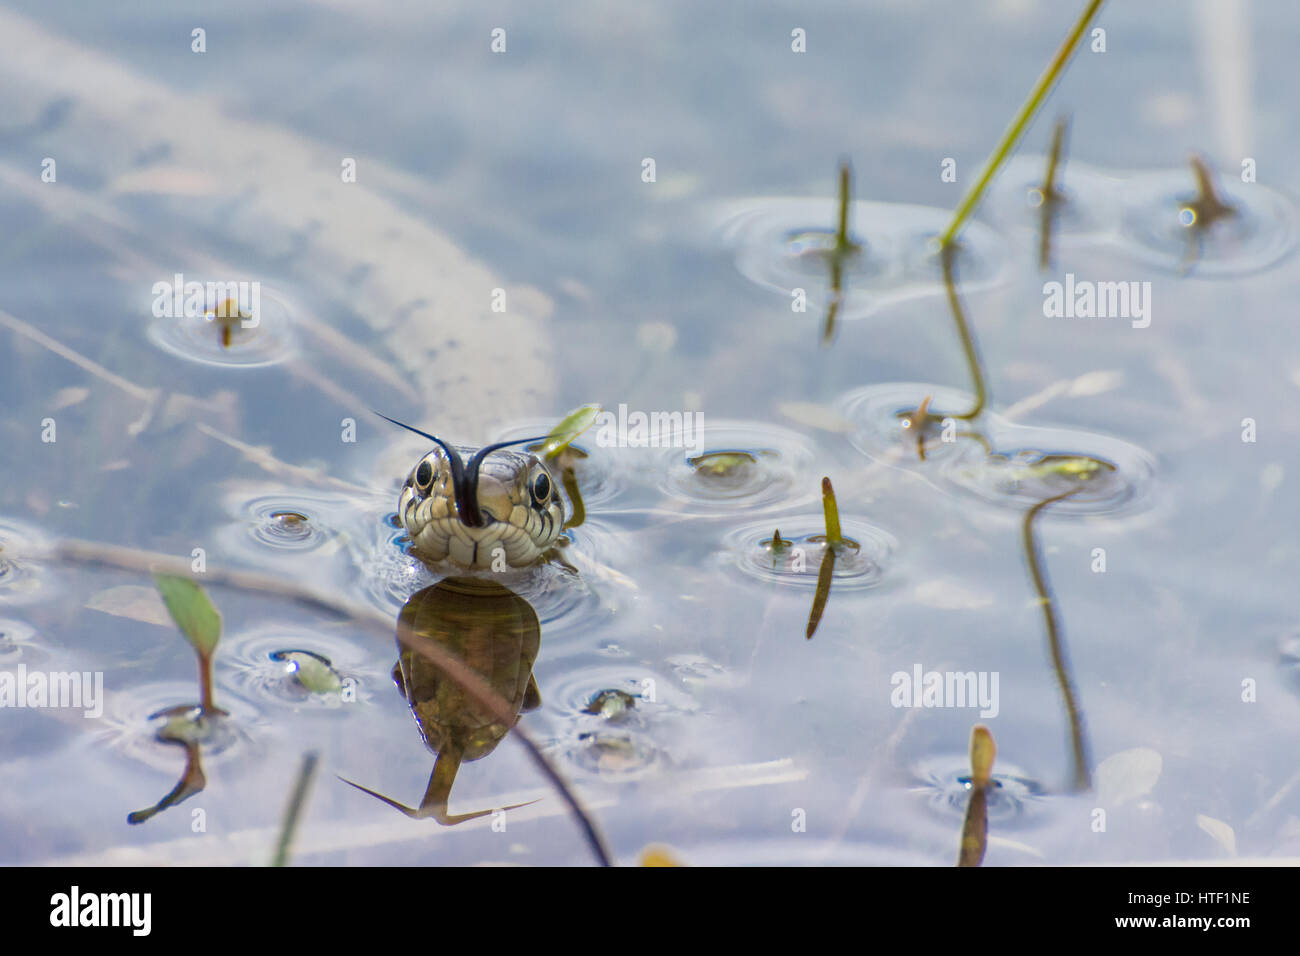 Primo piano di un serpente d'erba (Natrix natrix) che nuota in un laghetto, Regno Unito - colpo di testa con la lingua che fa un'onditazione (chemosensing). Umorismo animale, umorismo. Foto Stock